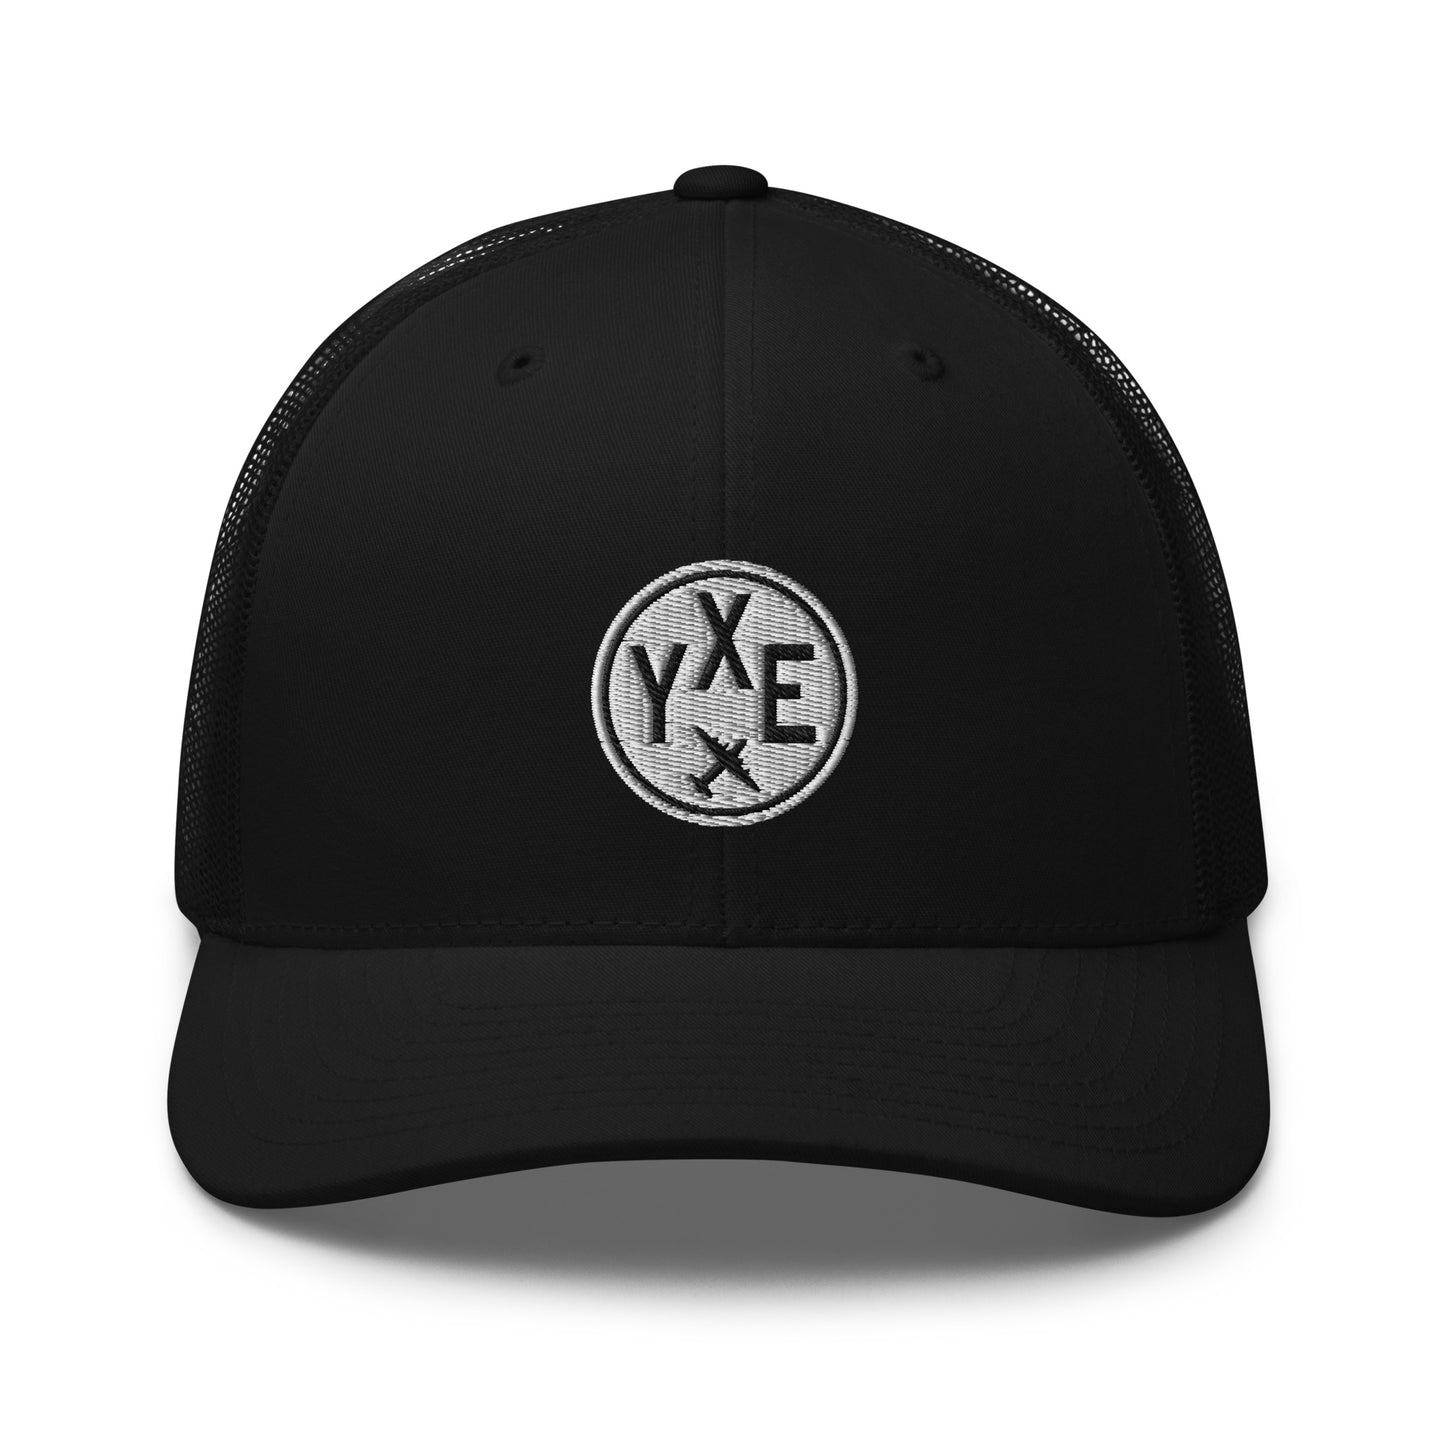 Roundel Trucker Hat - Black & White • YXE Saskatoon • YHM Designs - Image 06